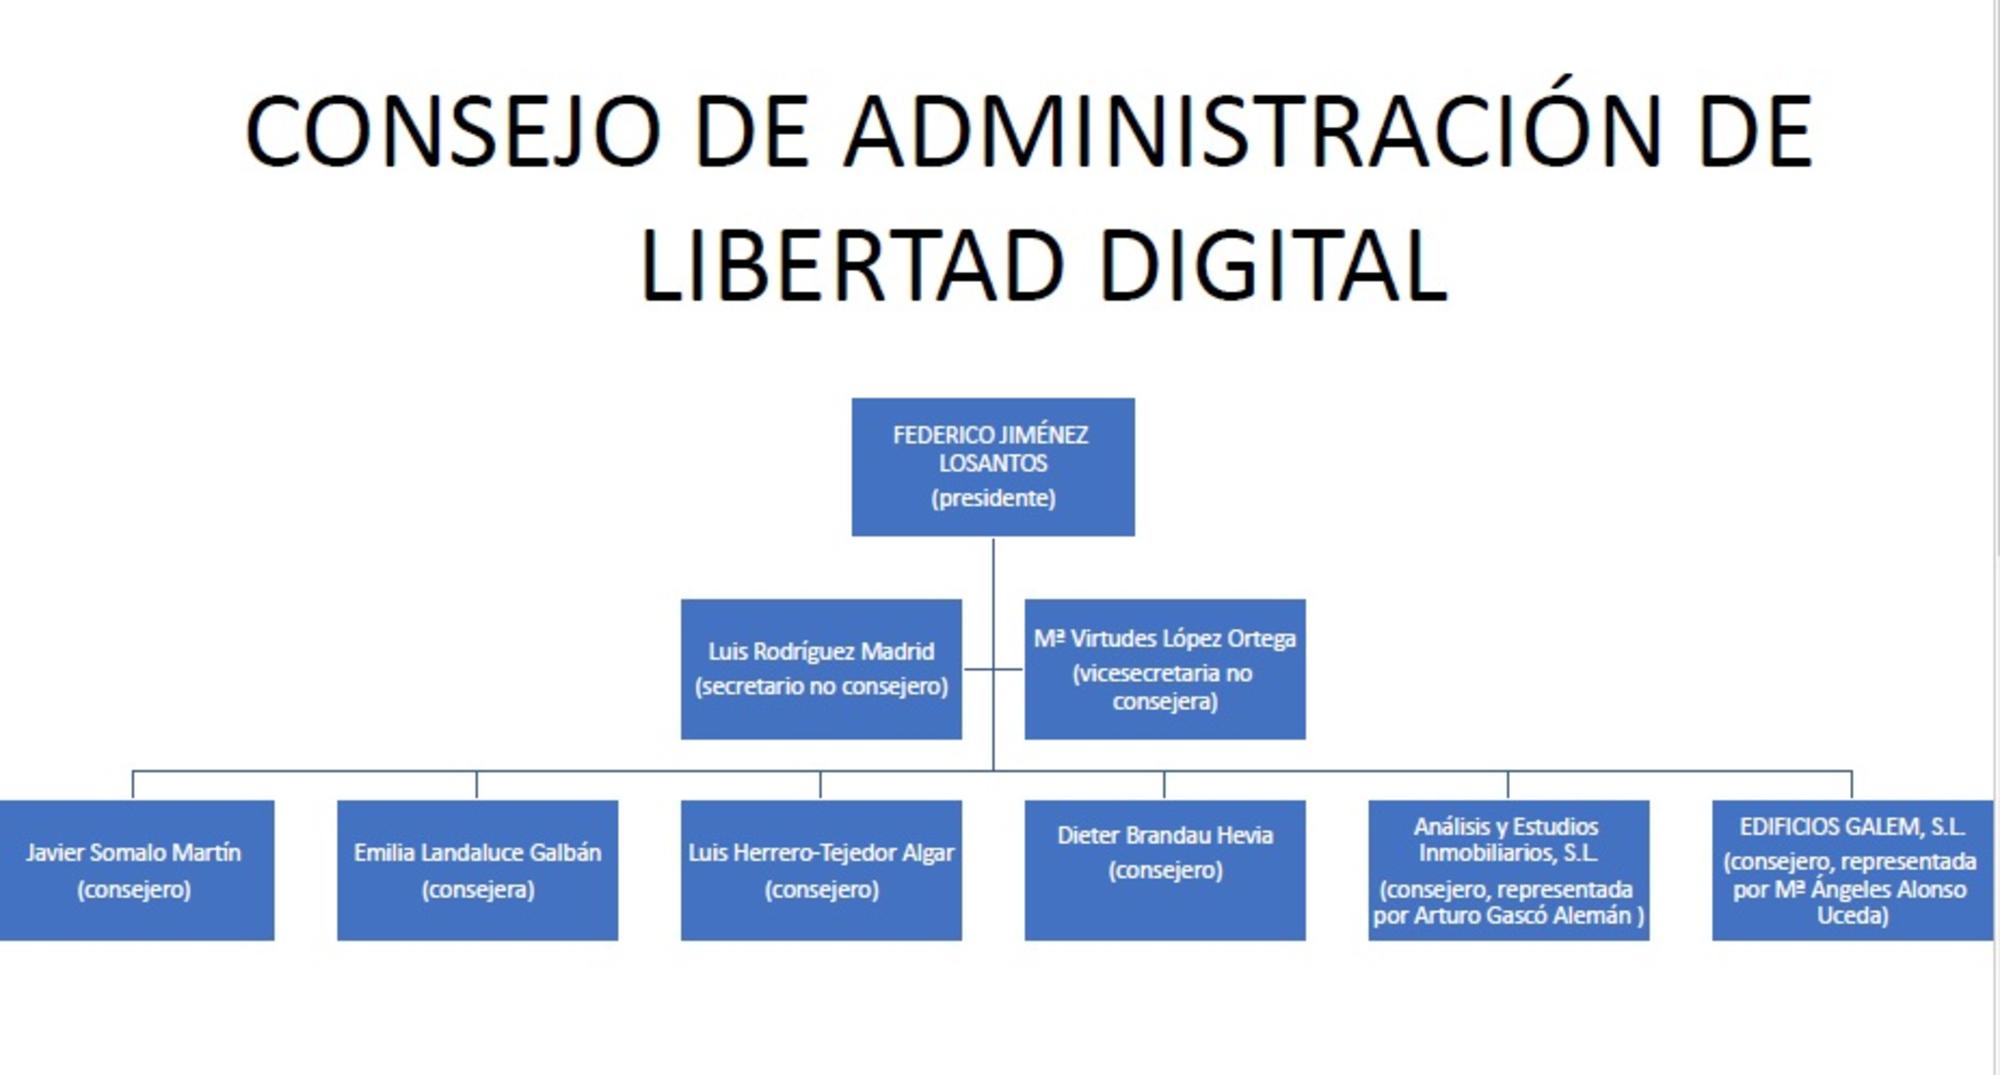 Consejo de administración de Libertad Digital